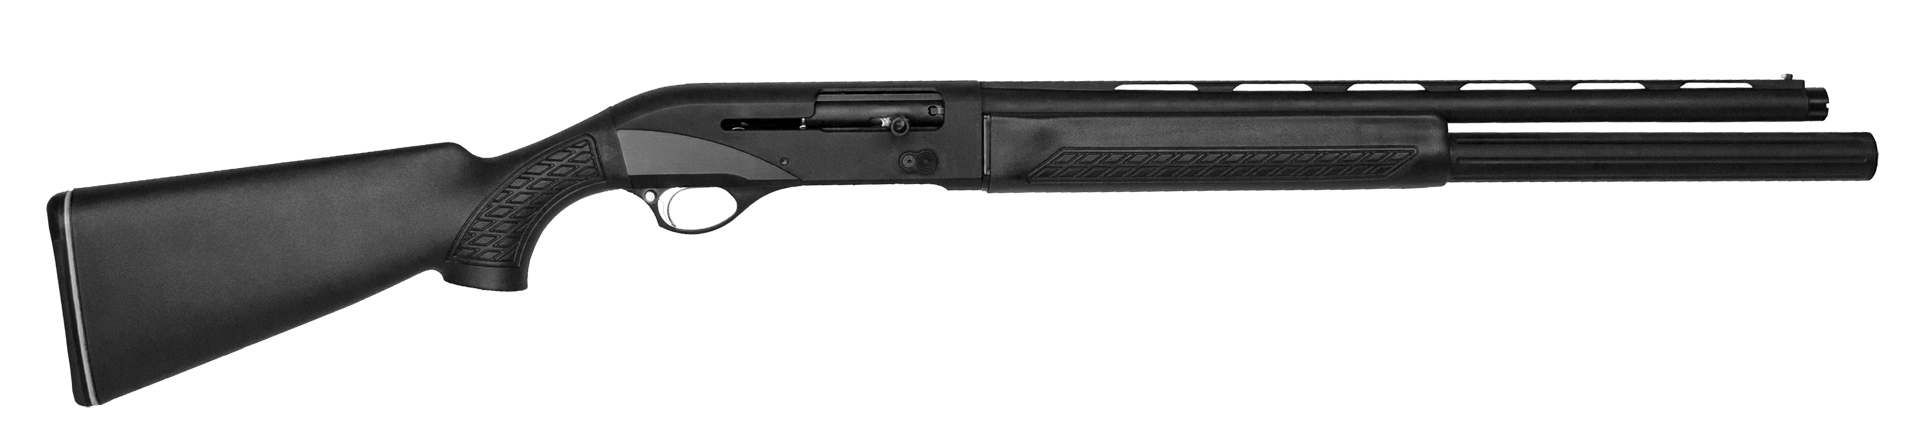 CZ 712 3-Gun